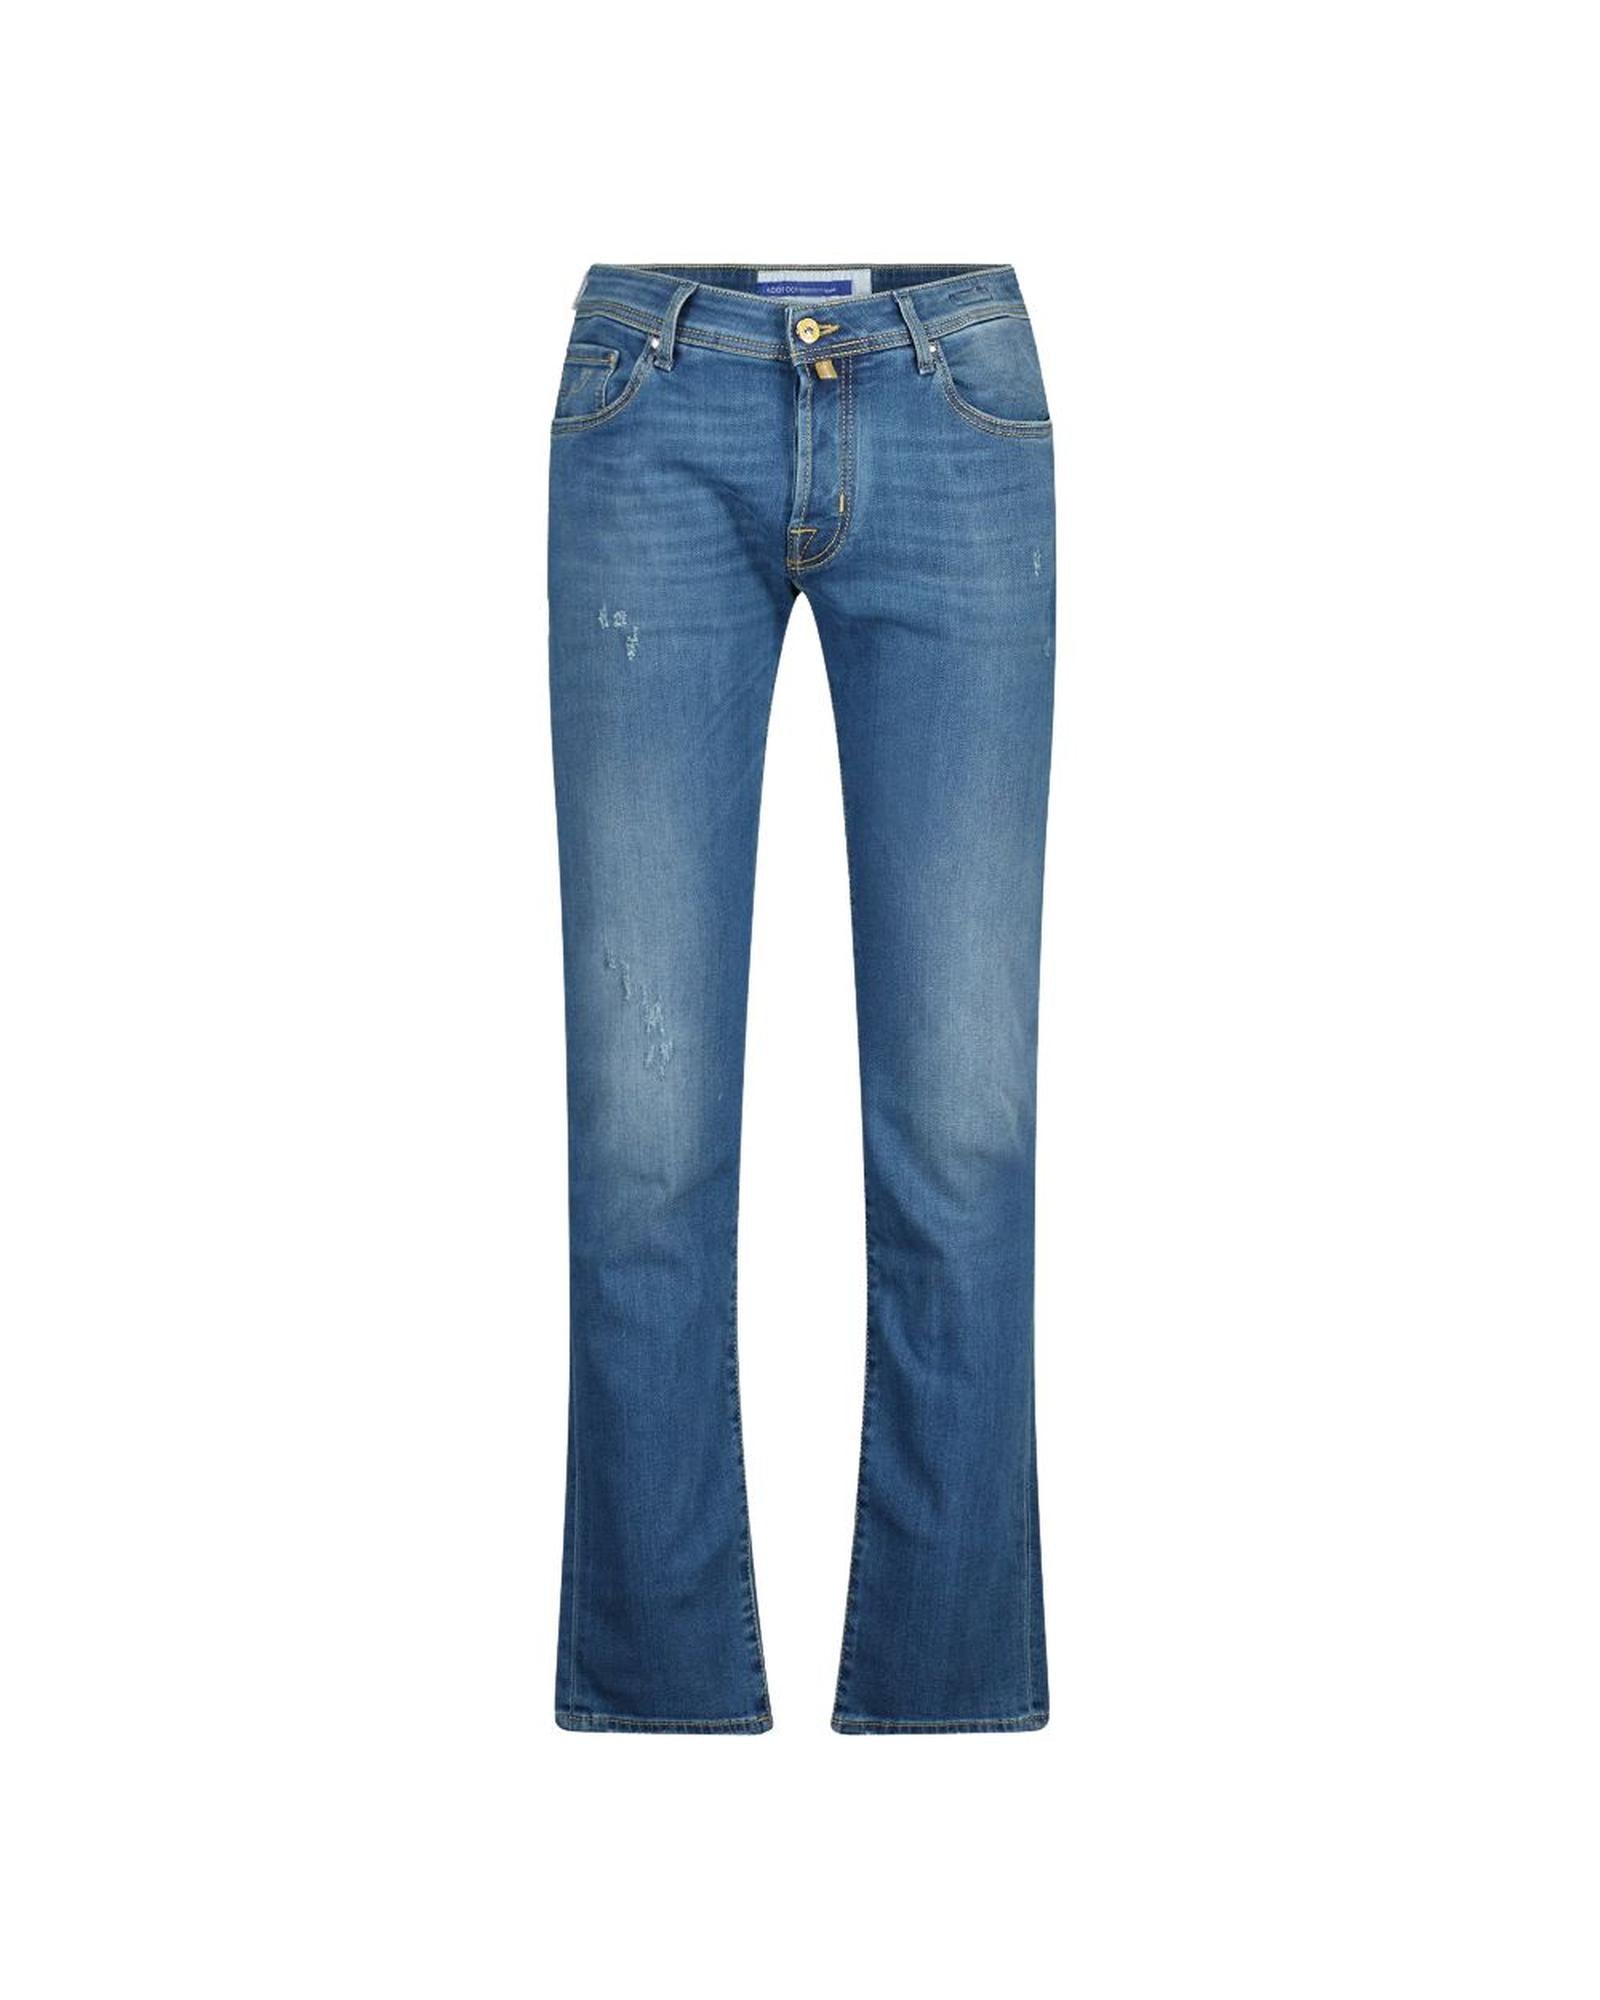 Men's Blue Cotton Jeans & Pant - W34 US